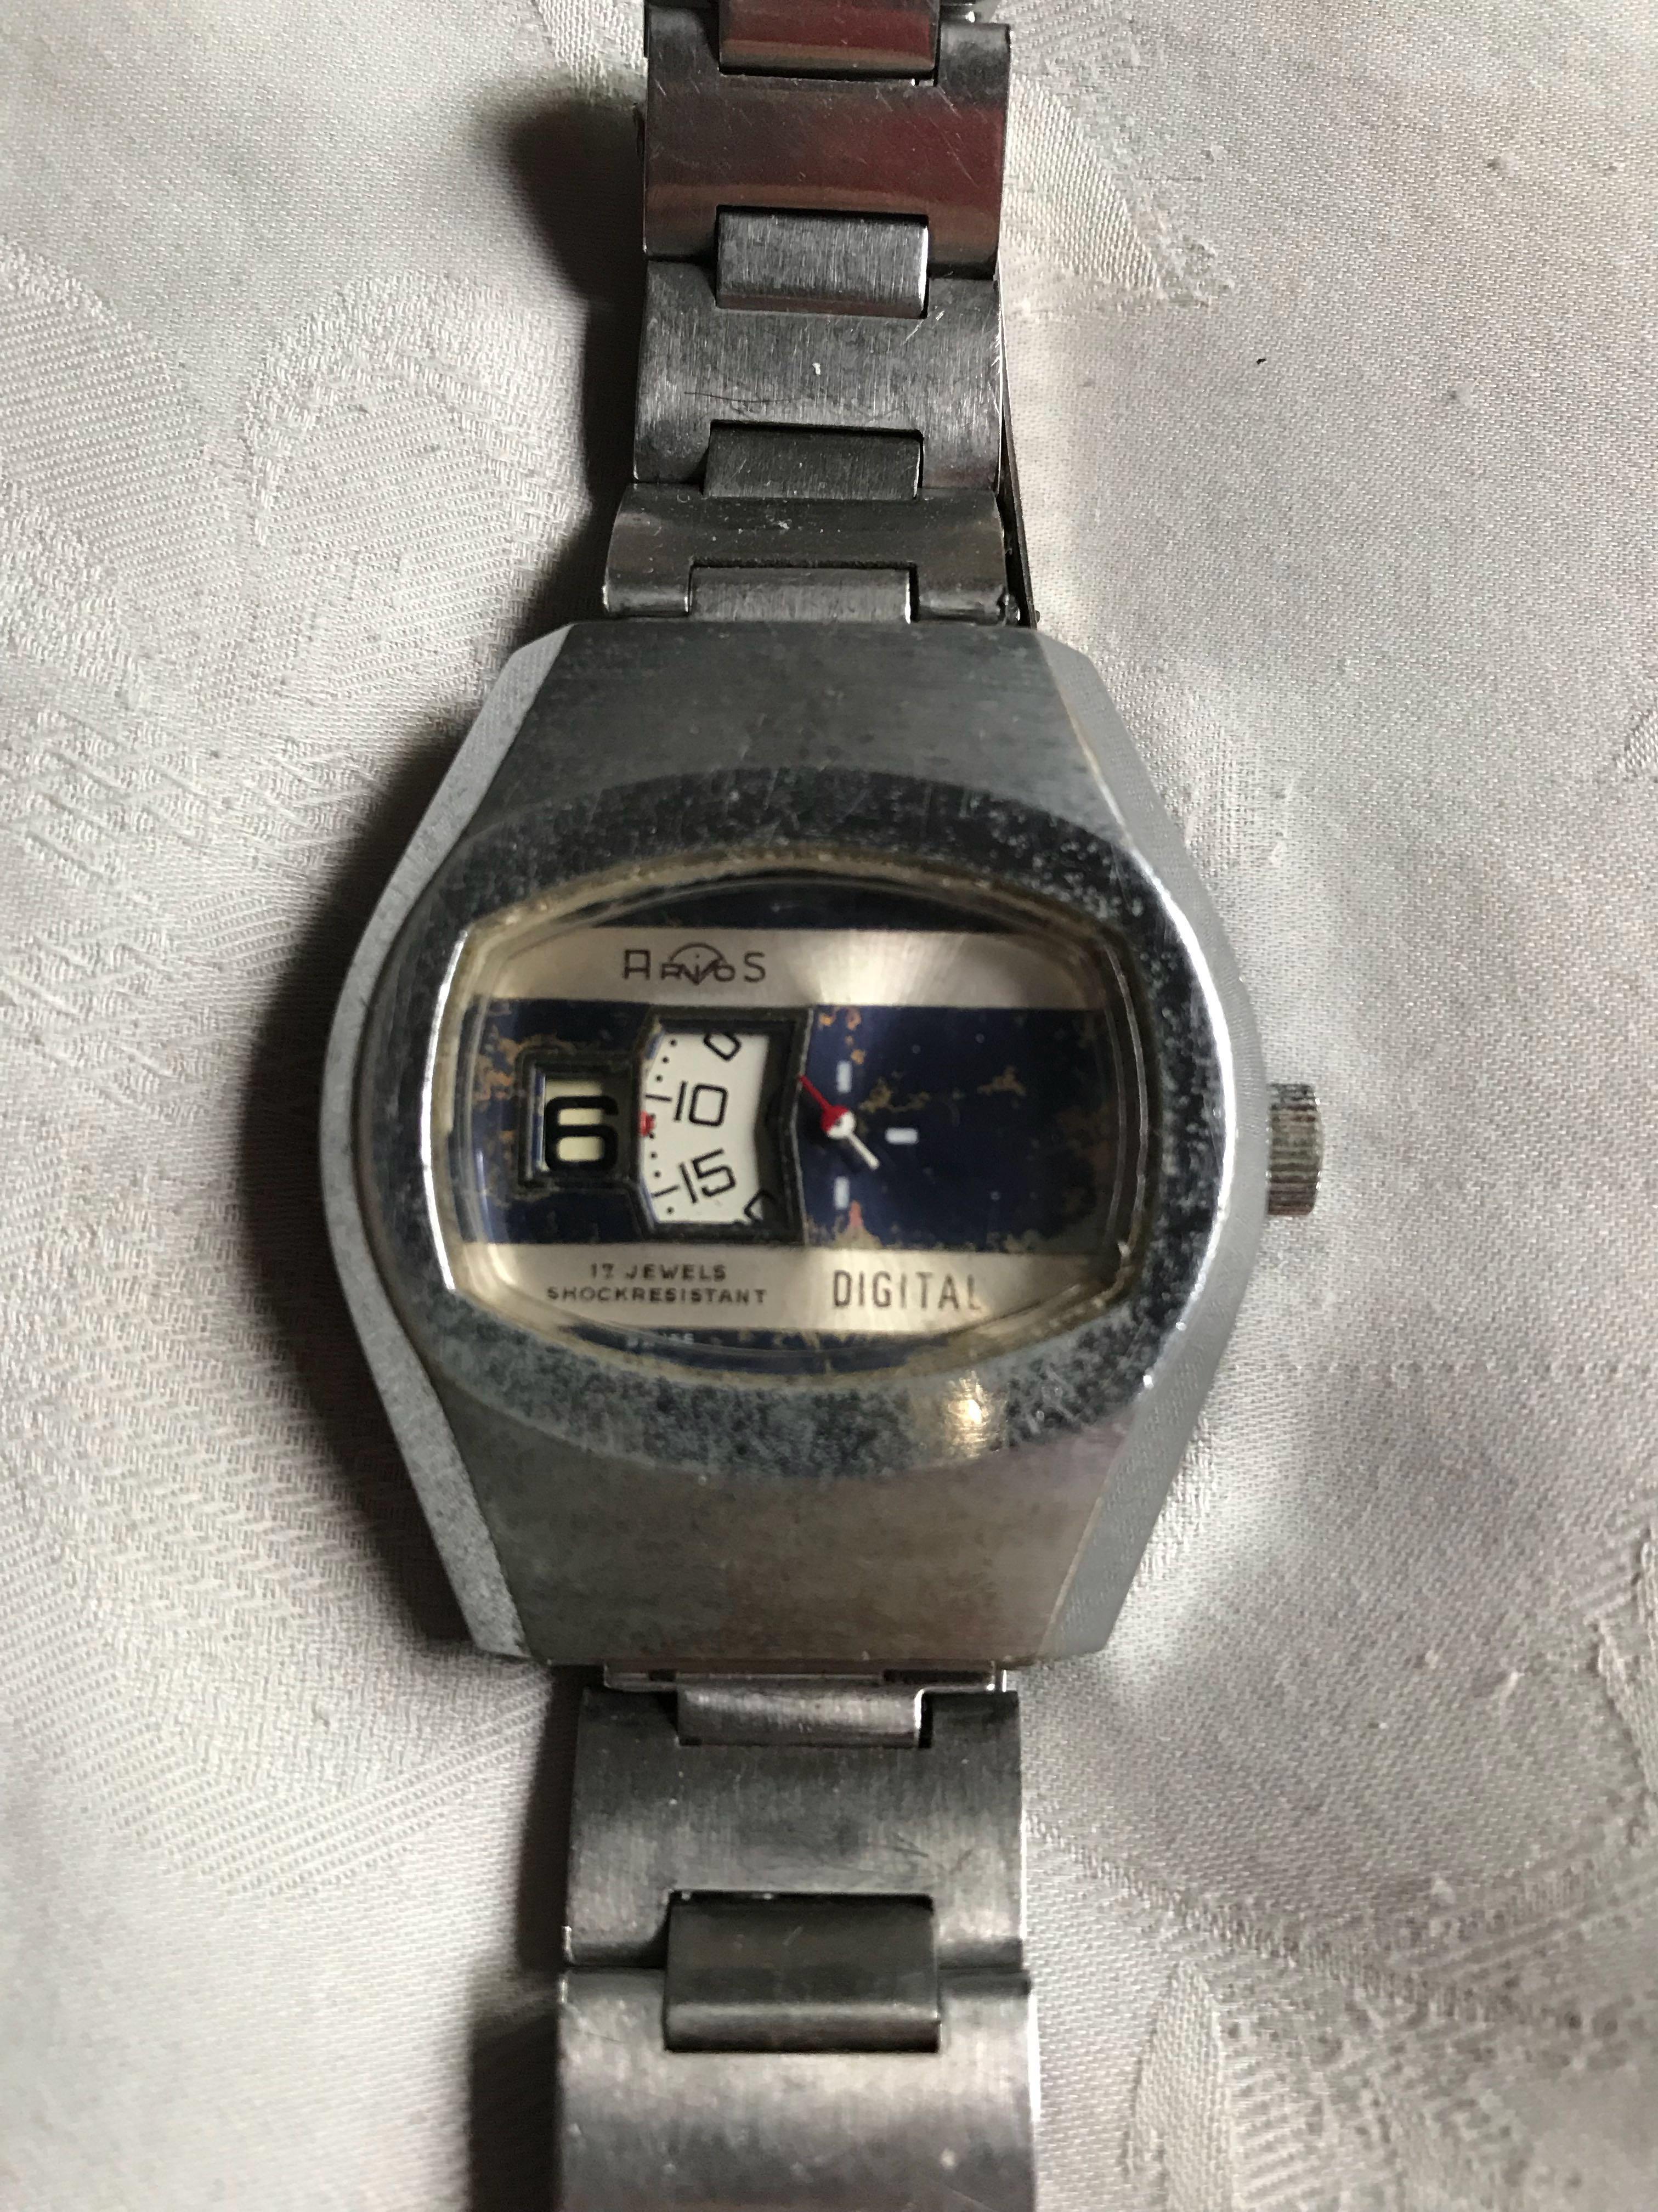 70s digital watch